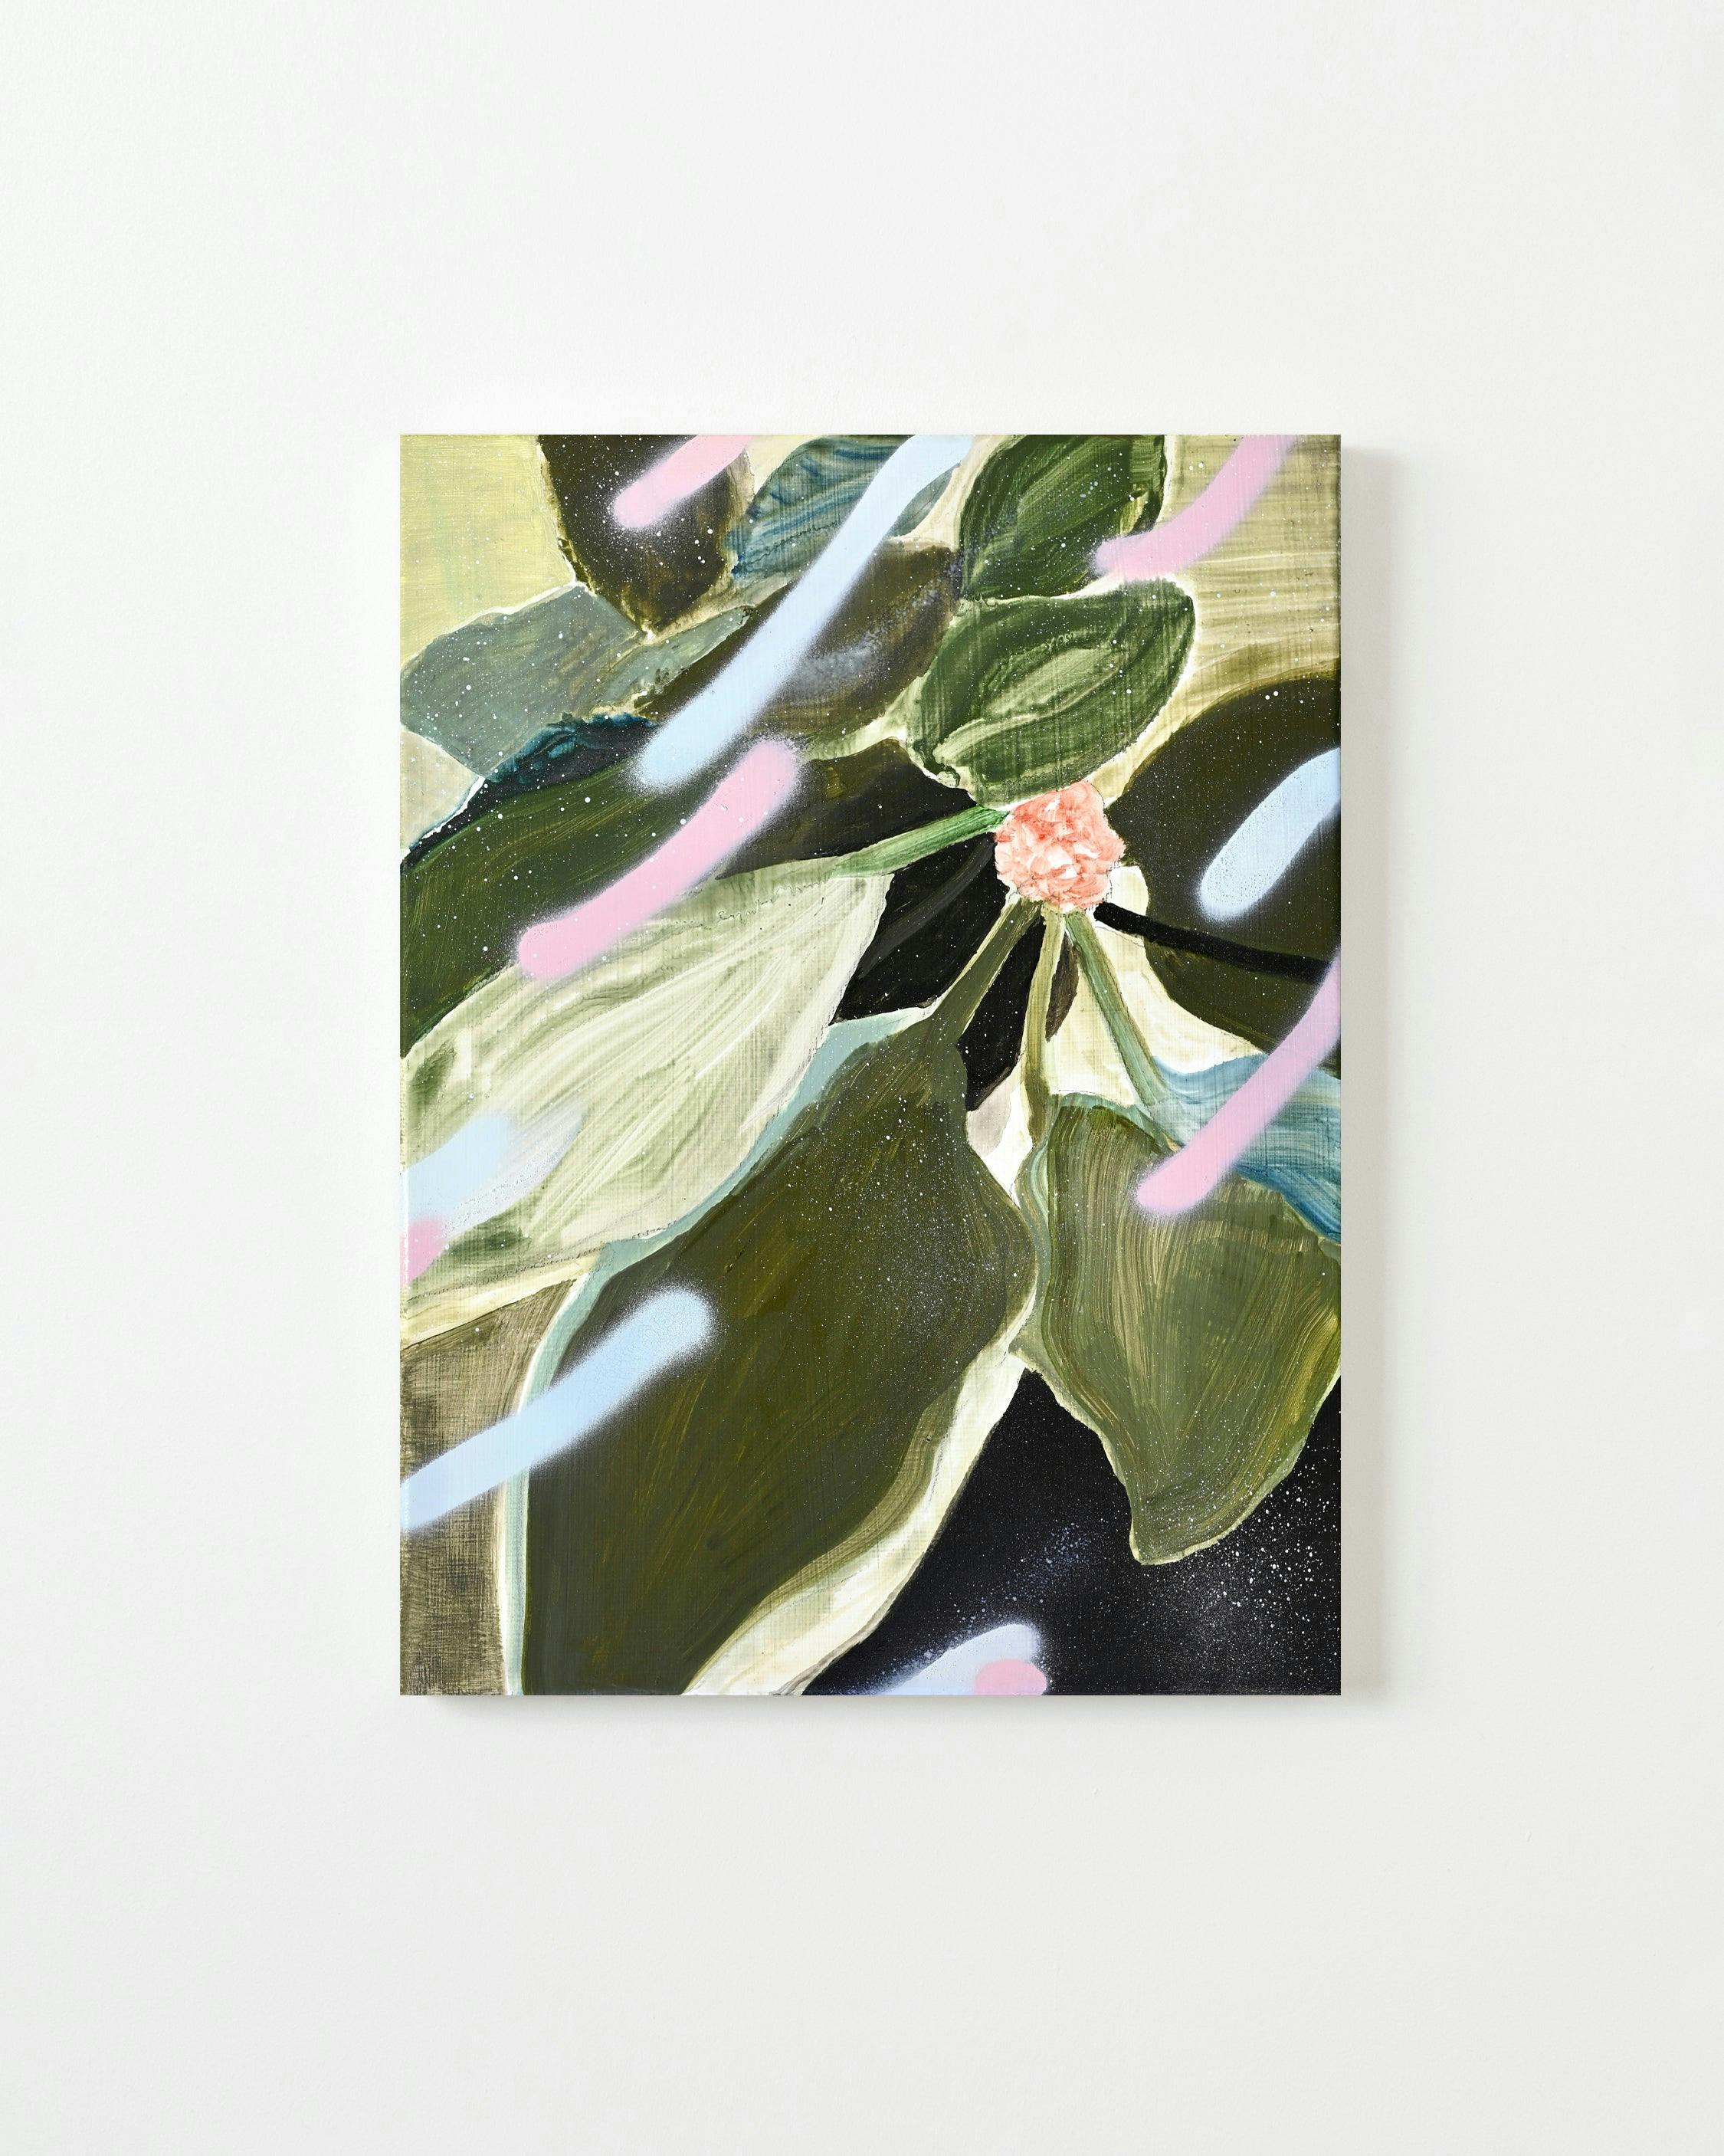 Una Ursprung - Morning dew, flowering plant #14 - Painting